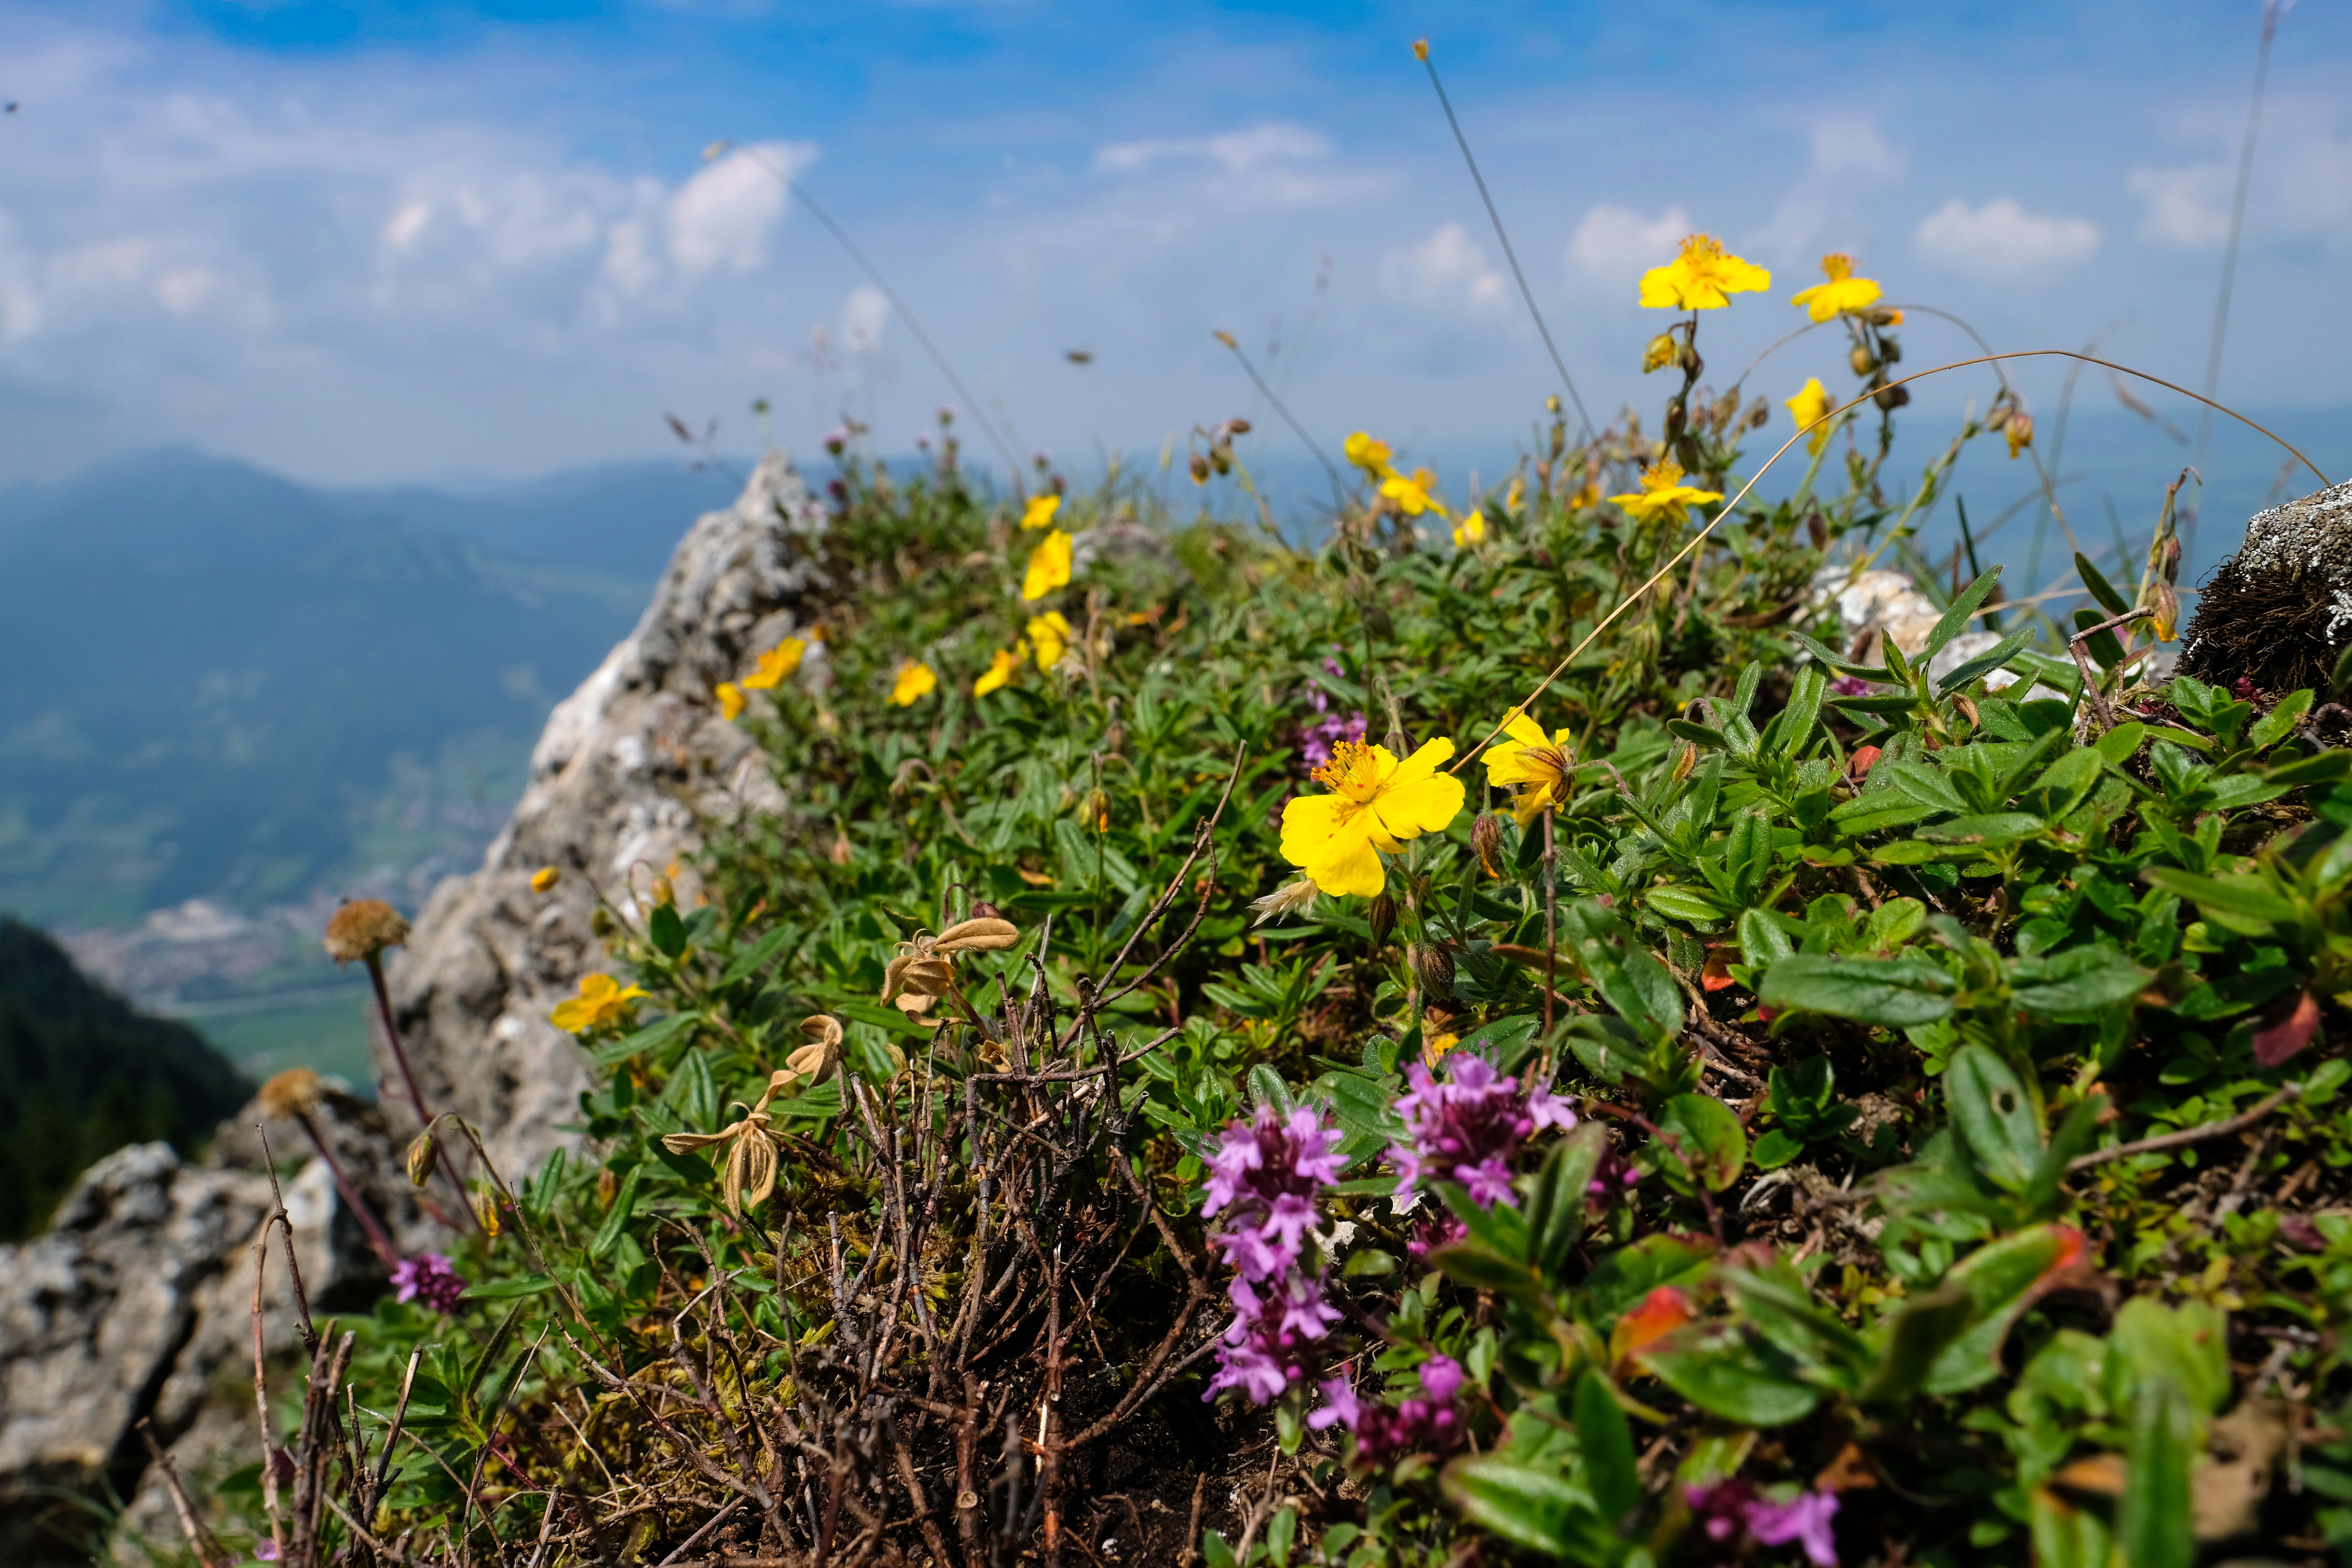 Der Grünten ist der sogenannte Hausberg und Namensgeber unserer Urlaubsregion Alpsee-Grünten. Er wird auch liebevoll "Der Wächter des Allgäus" genannt, und dass ist auch berechtigt. Von dem 1.738 Meter hohen Berg hat man einen traumhaften 360-Grad-Blick in alle Ecken des Allgäus und die Allgäuer Berge.